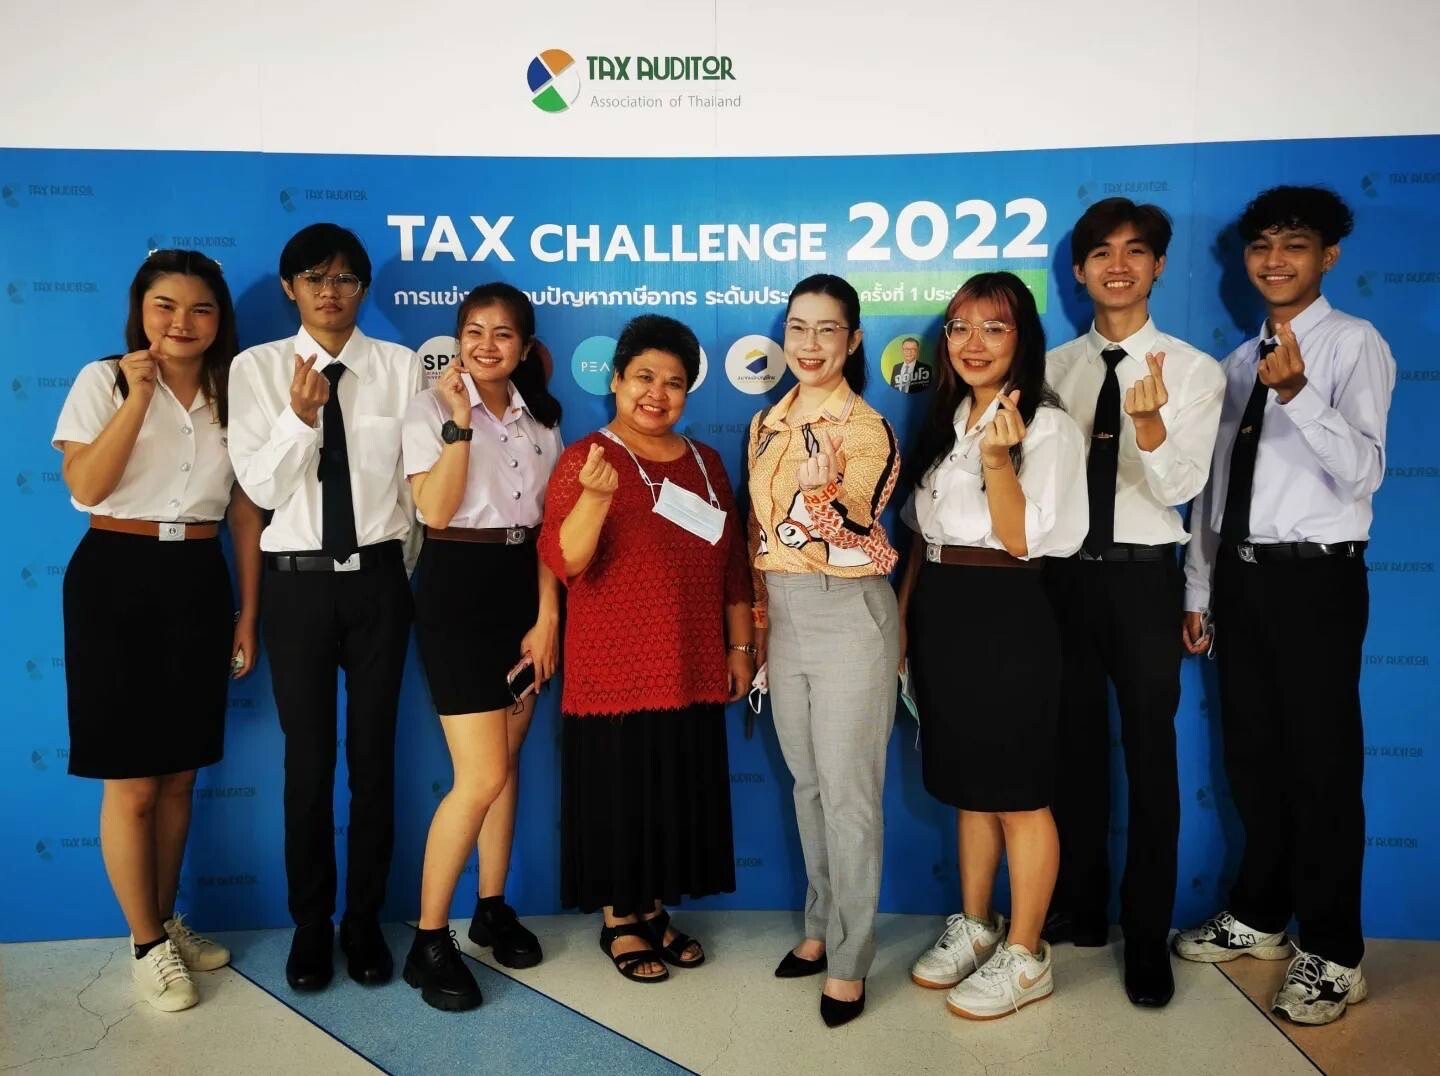 บัญชี CIBA DPU คว้ารางวัลรองชนะเลิศอันดับ 2 แข่งตอบปัญหาด้านภาษีอากร ผ่านโครงการ"Tax-Challenge 2022"